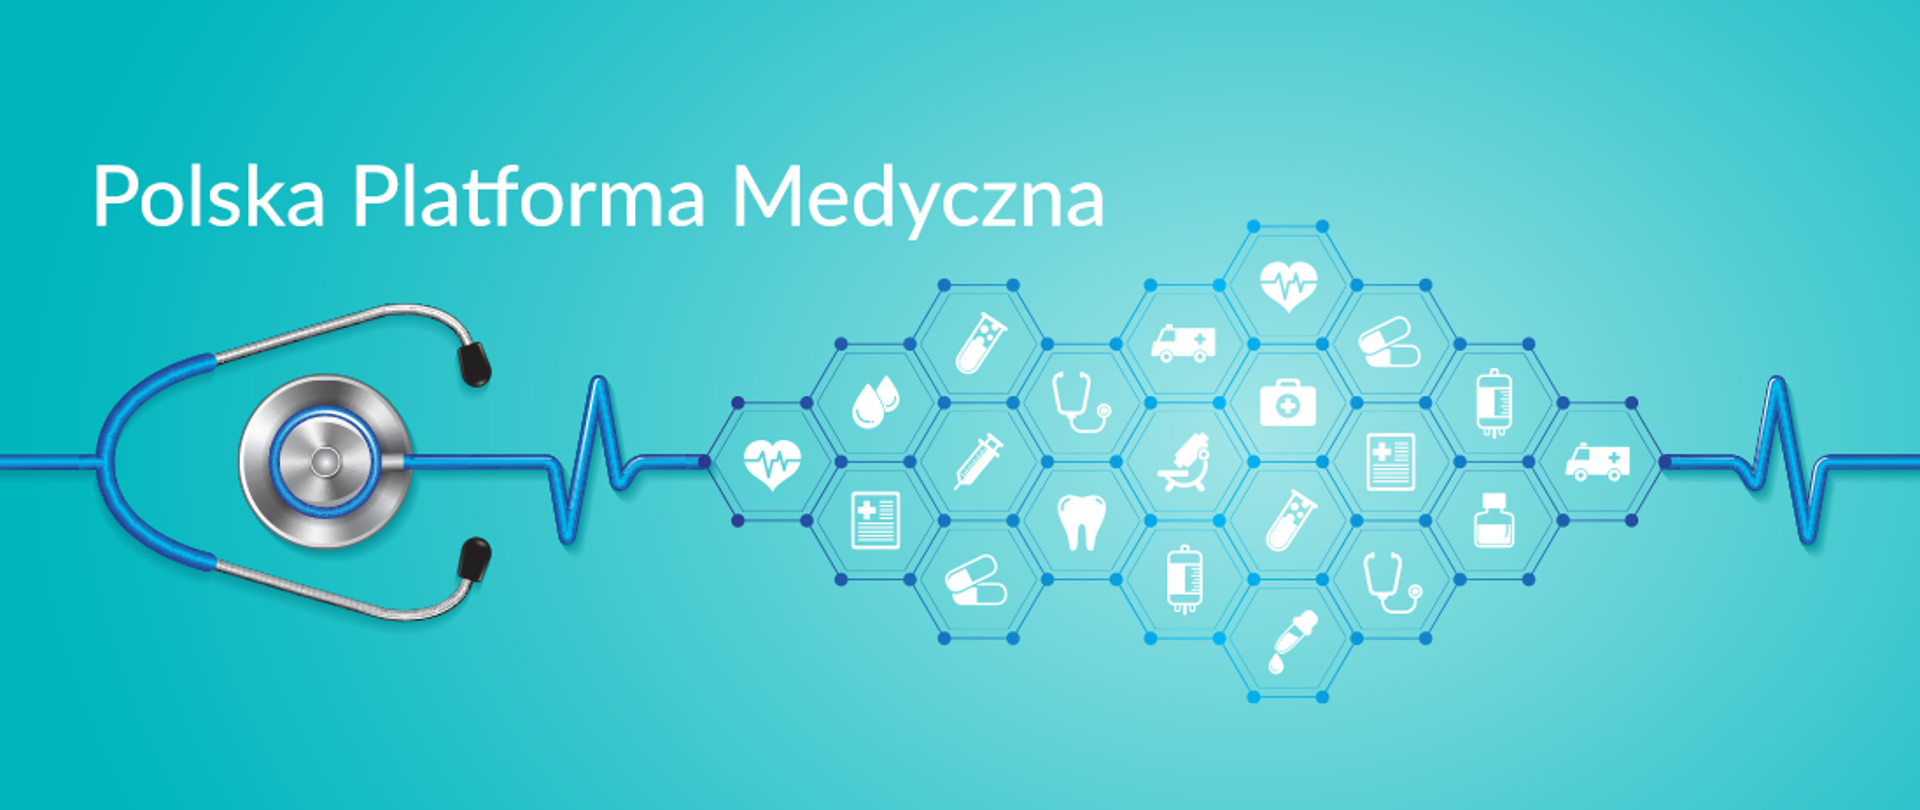 grafika o treści: "Polska Platforma Medyczna" przedstawiająca stetoskop oraz ikony związane z medycyną 